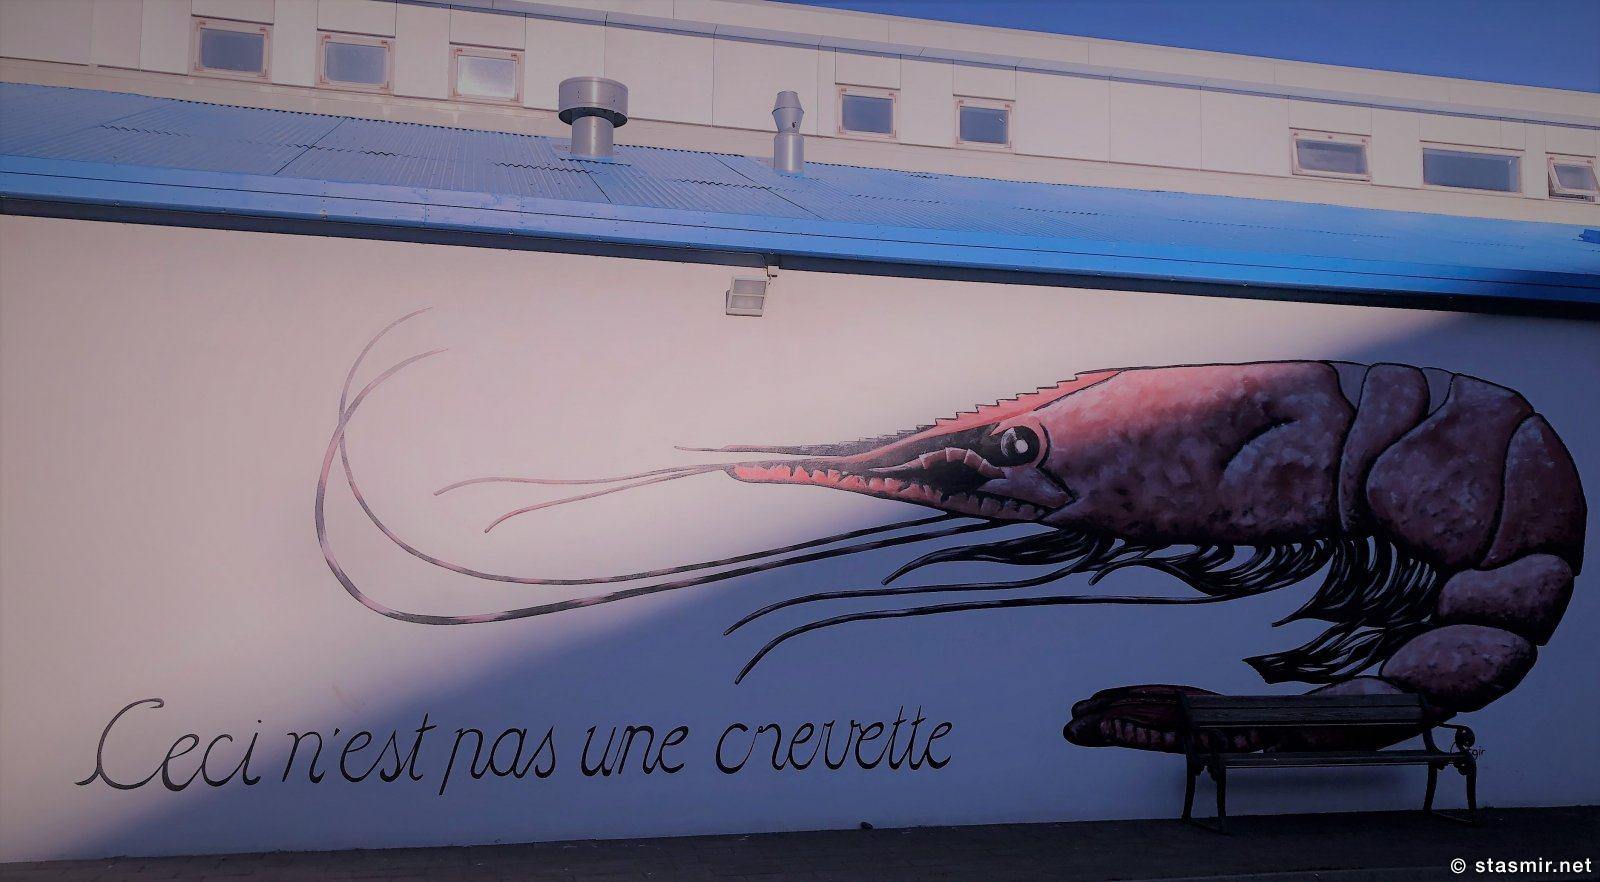 crevette, Это не креветка. Хужожественная роспись стены рыбзавода, Скагафьердюр, фото Стасмир, photo Stasmir